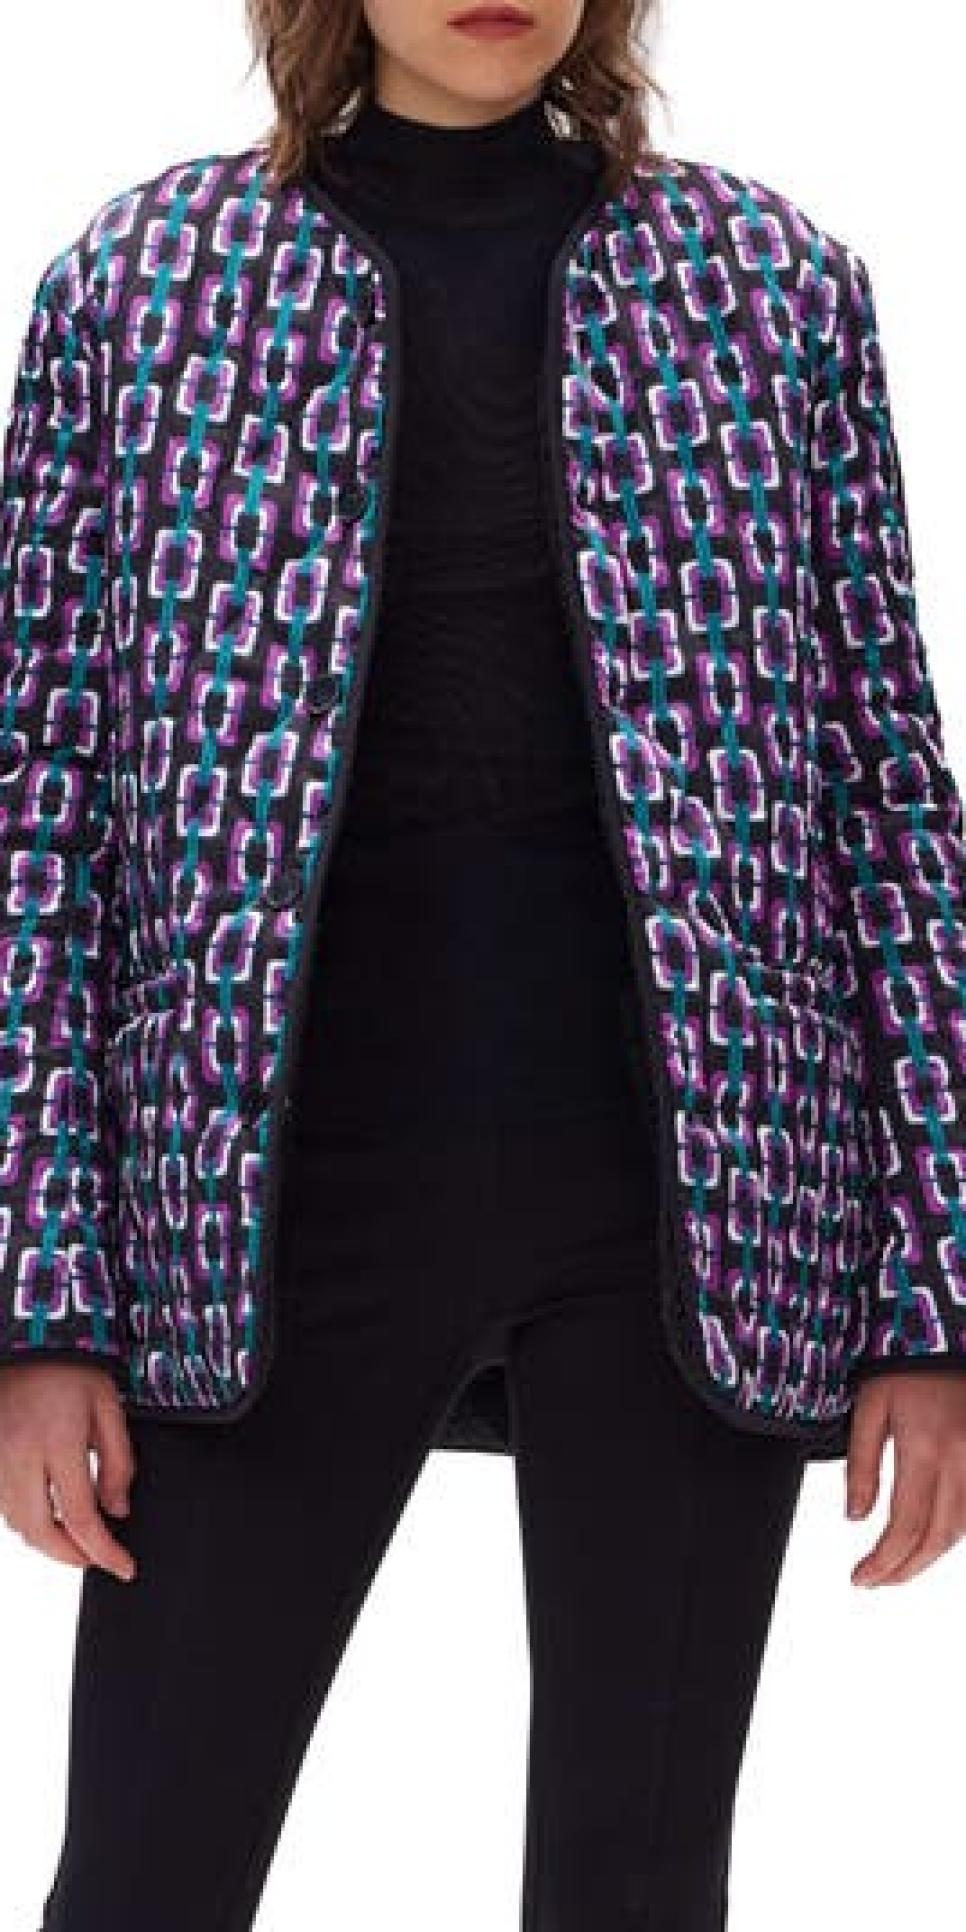 rx-nordstromdiane-von-furstenberg-womens-domino-reversible-geo-print-quilted-jacket.jpeg